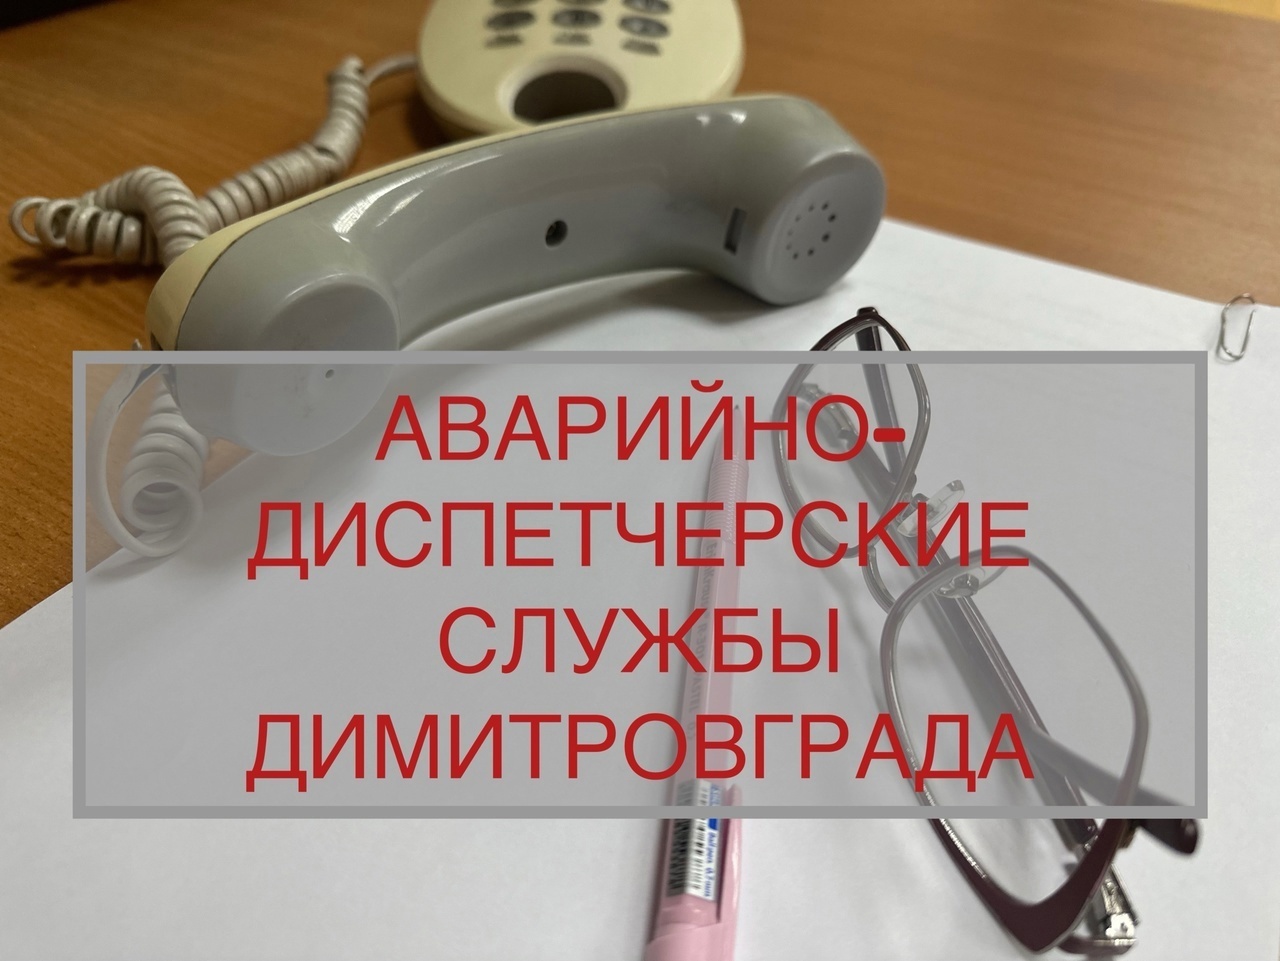 Телефоны аварийно-диспетчерских служб Димитровграда.